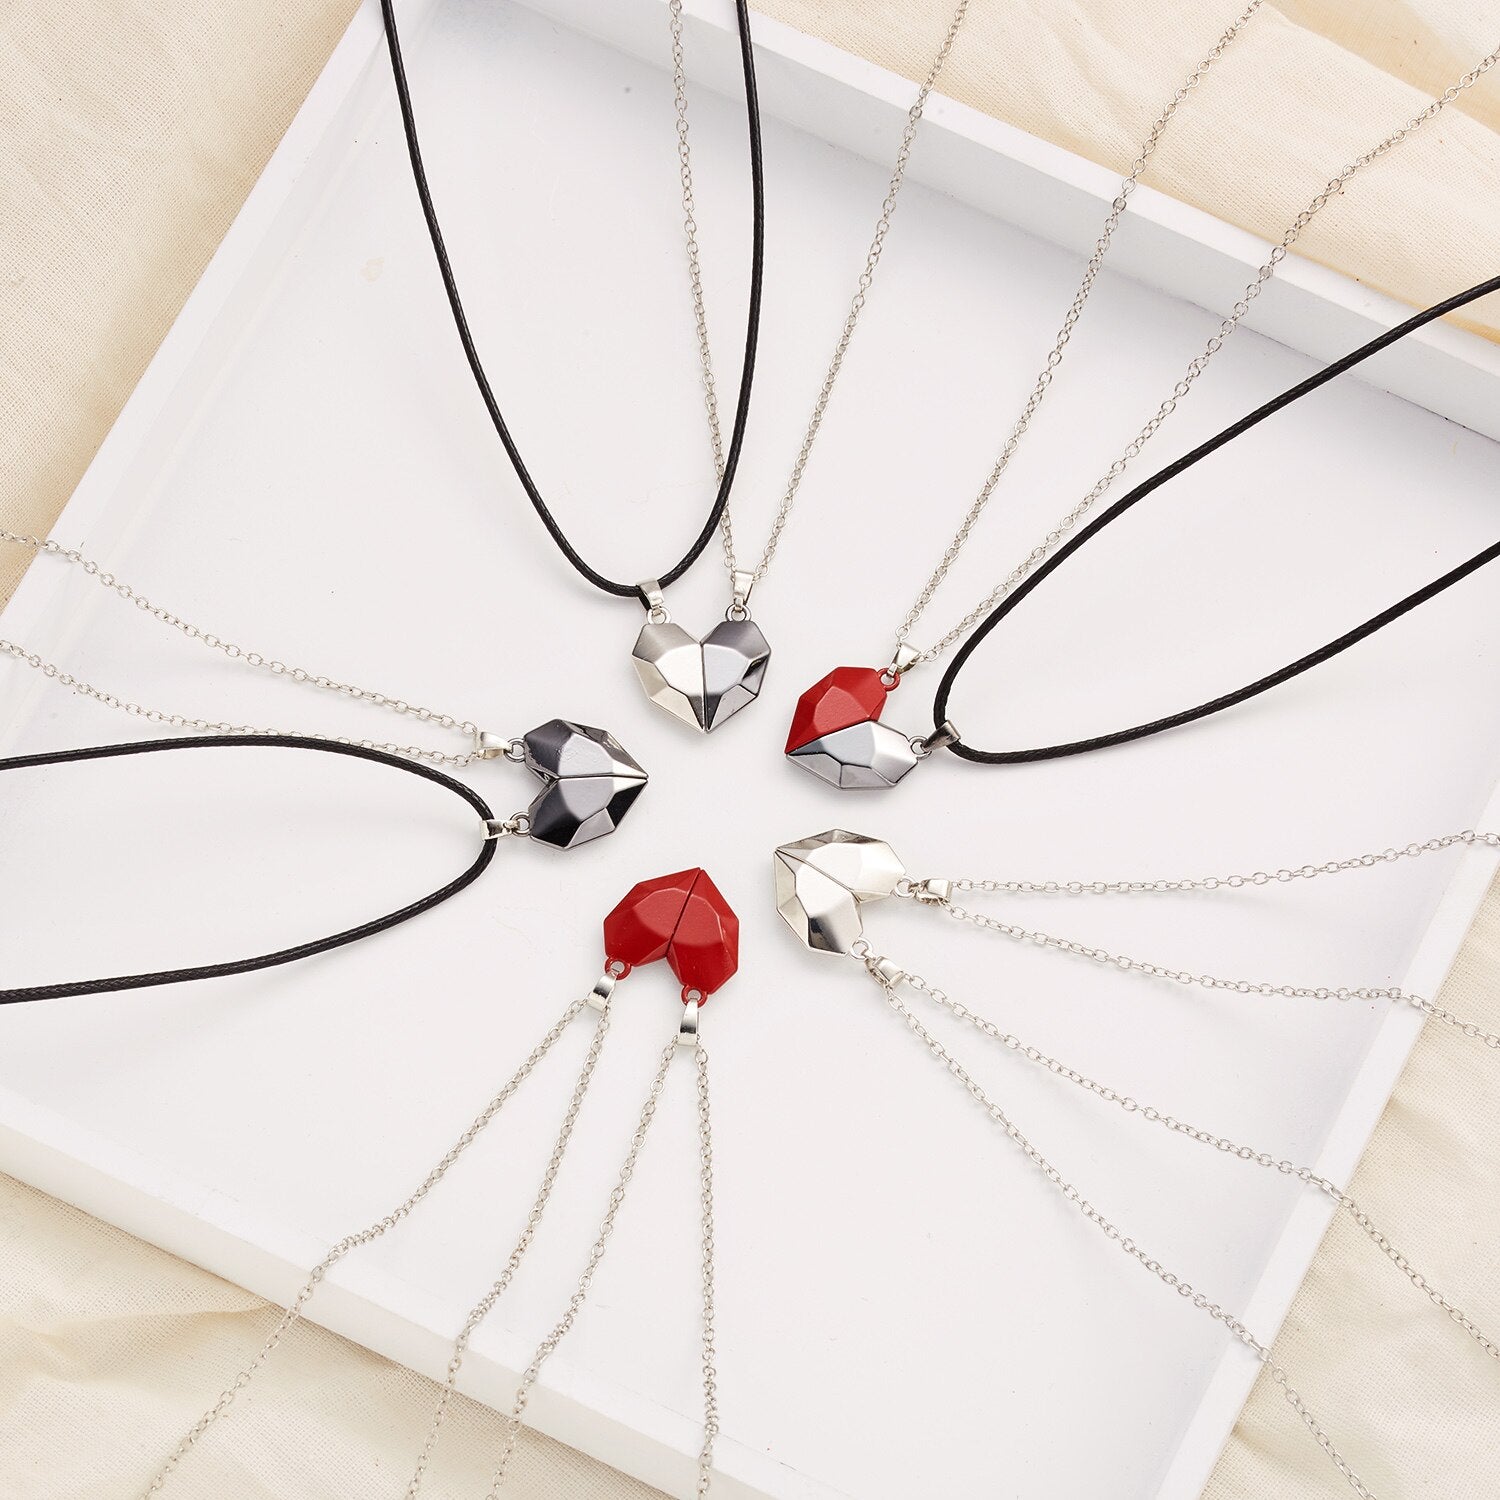 Magnetic Couple Necklace Friendship Heart Pendant